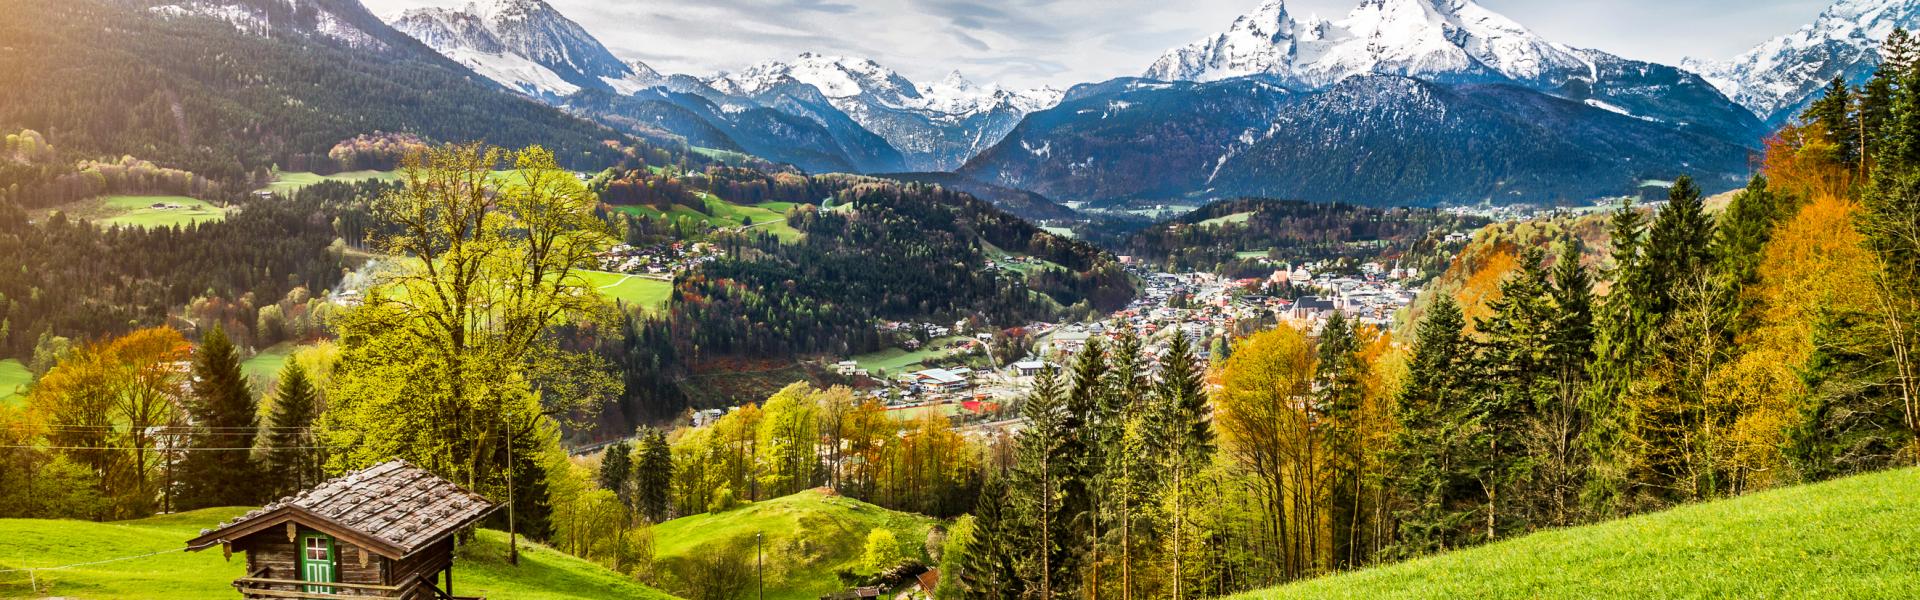 Ferienwohnungen & Ferienhäuser für Urlaub in Berchtesgaden - Casamundo